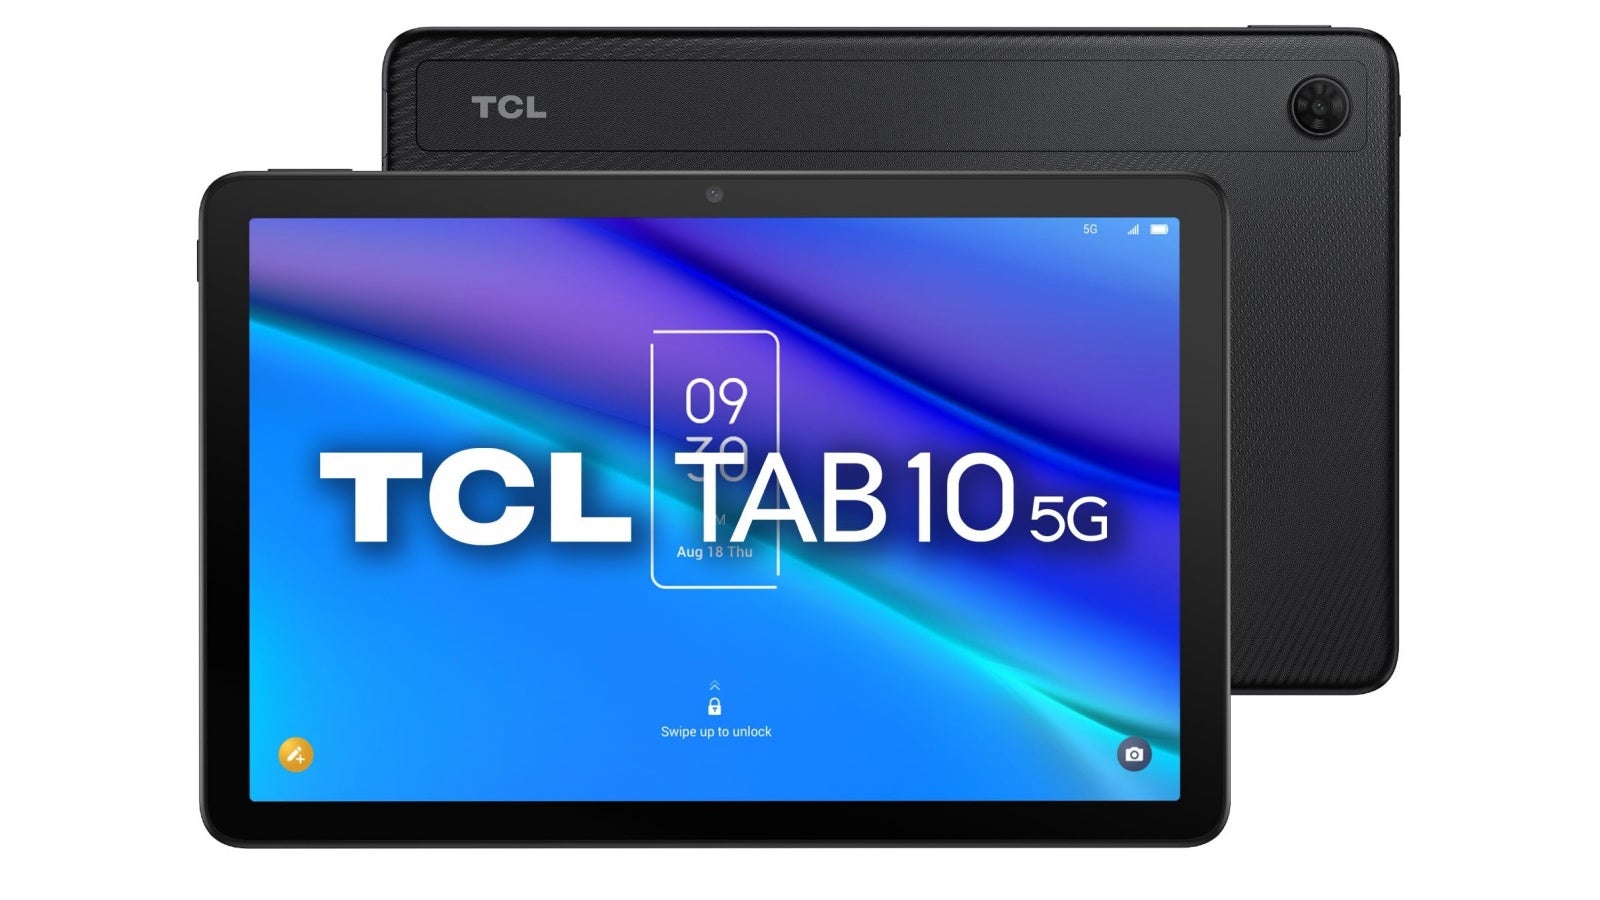 TCL tablet s plným HD displejem, silnou baterií, 5G rychlostí a dalšími výhodami